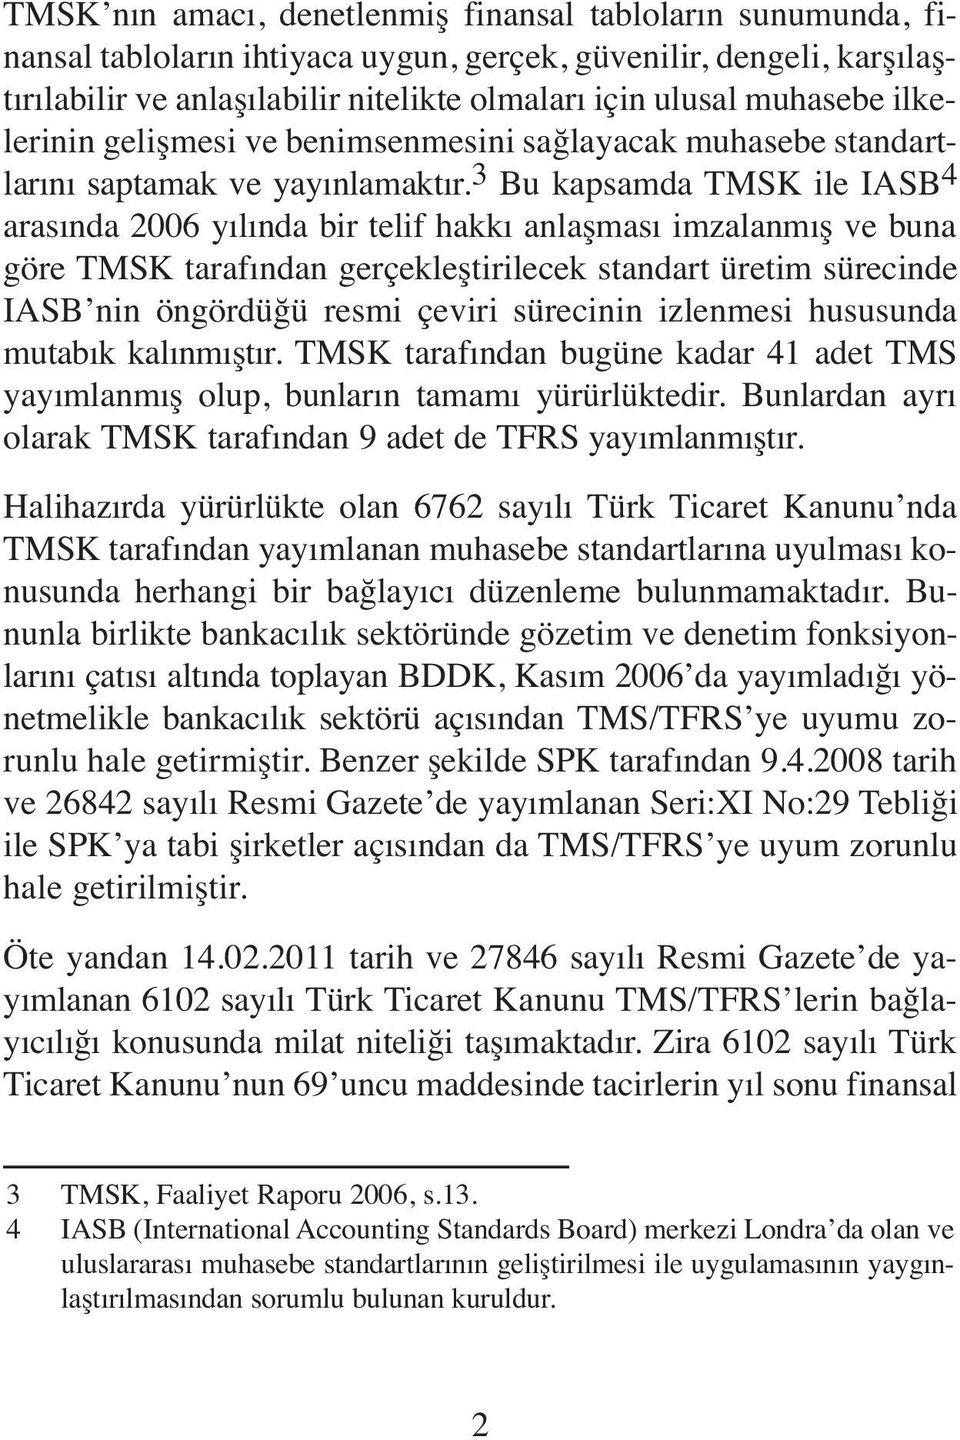 3 Bu kapsamda TMSK ile IASB 4 arasında 2006 yılında bir telif hakkı anlaşması imzalanmış ve buna göre TMSK tarafından gerçekleştirilecek standart üretim sürecinde IASB nin öngördüğü resmi çeviri